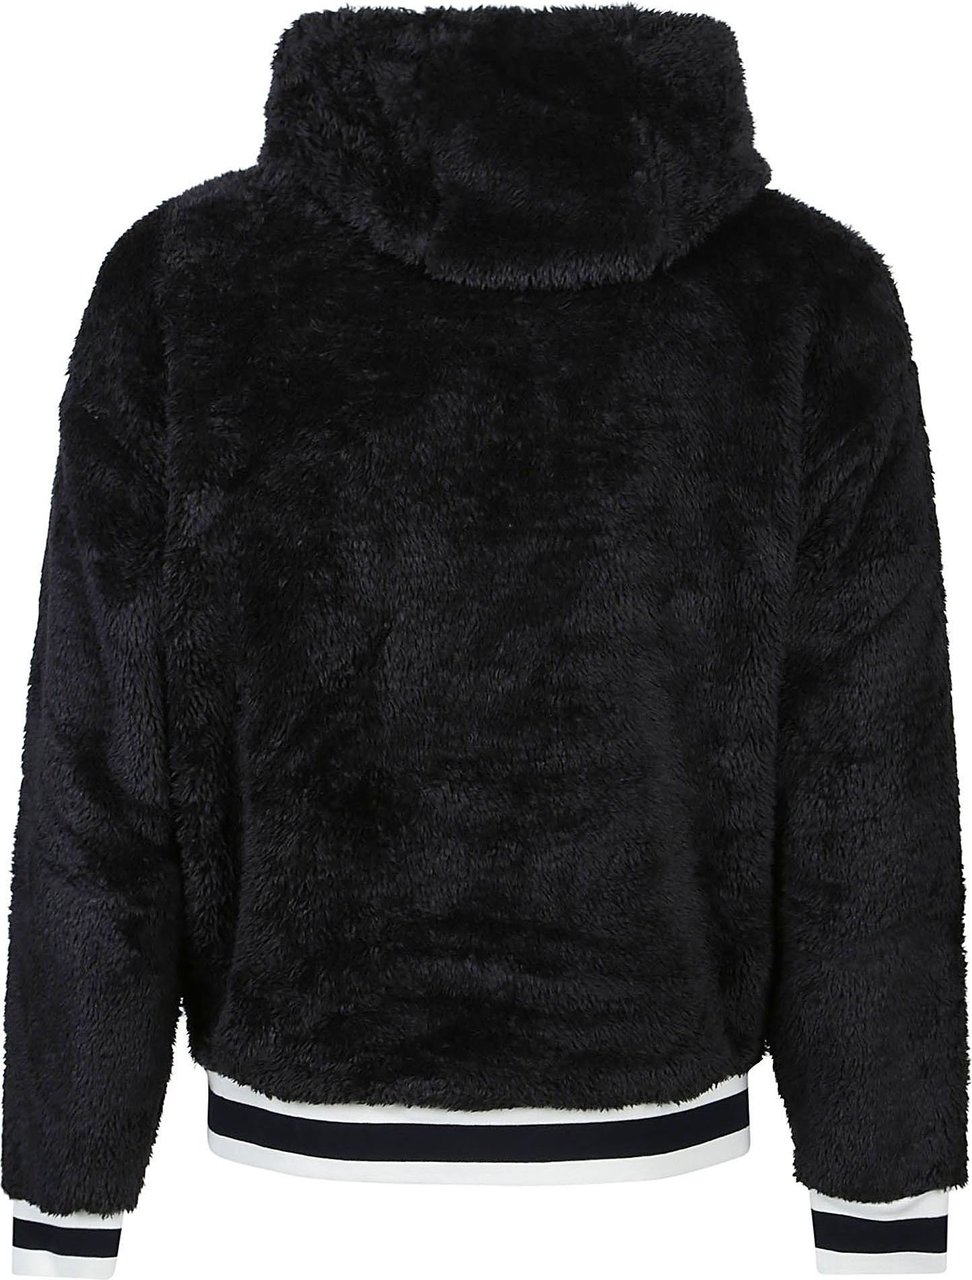 Ralph Lauren Long Sleeve Sweatshirt Black Zwart